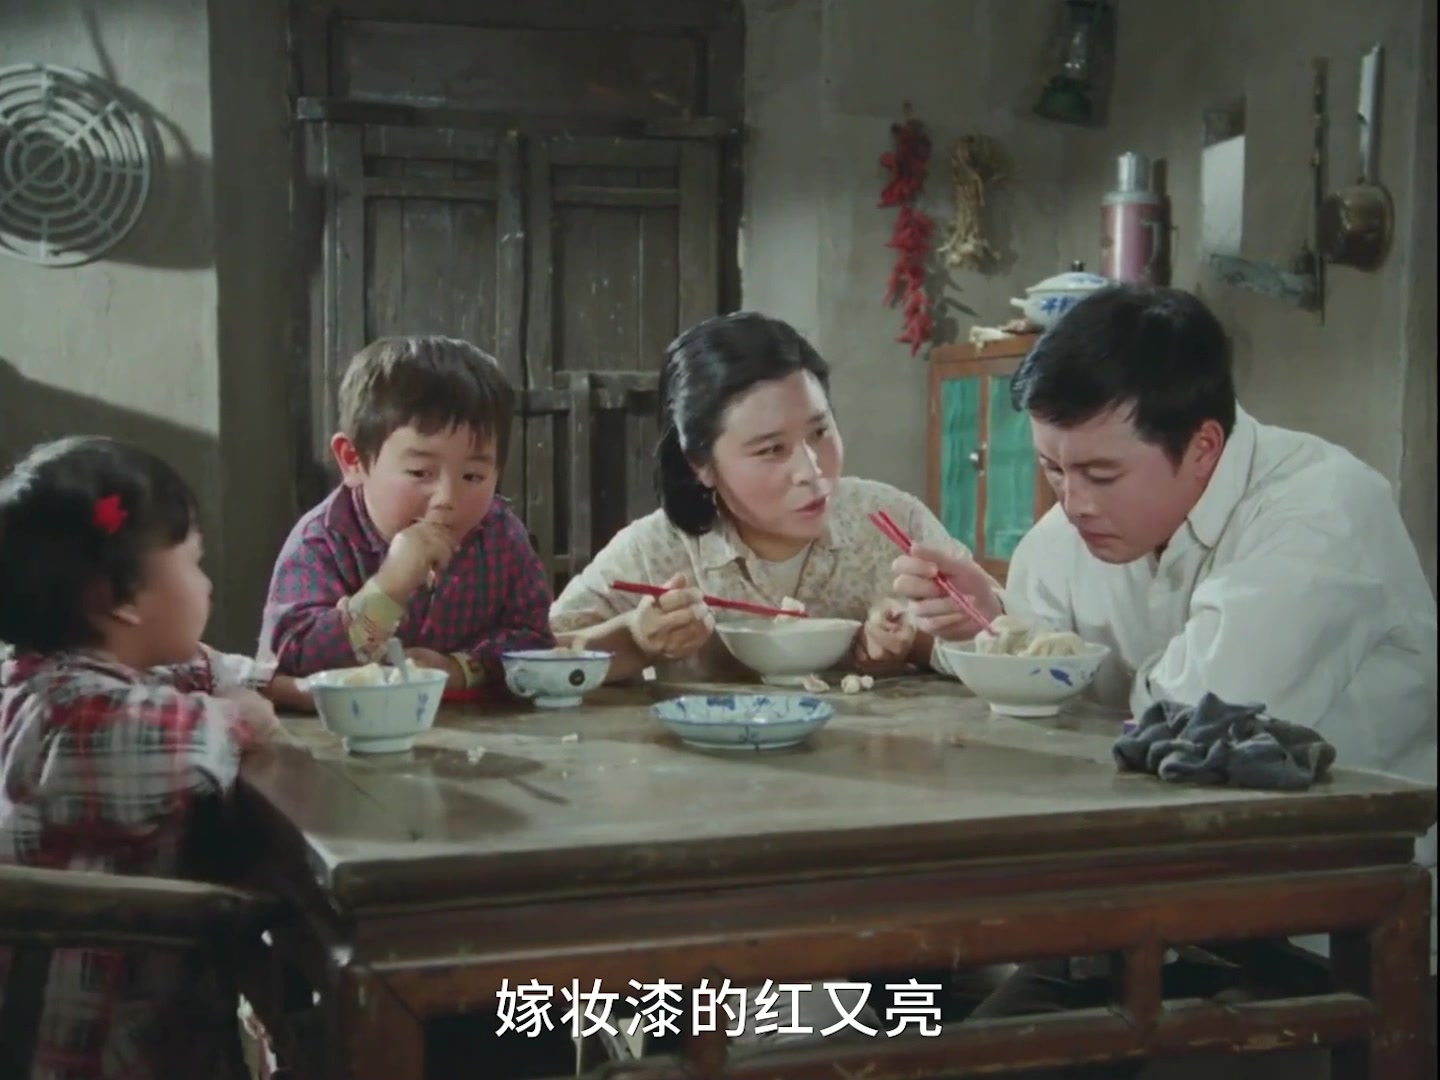 农村怀旧电影《喜盈门》,经典就是经典,生活气息太浓烈